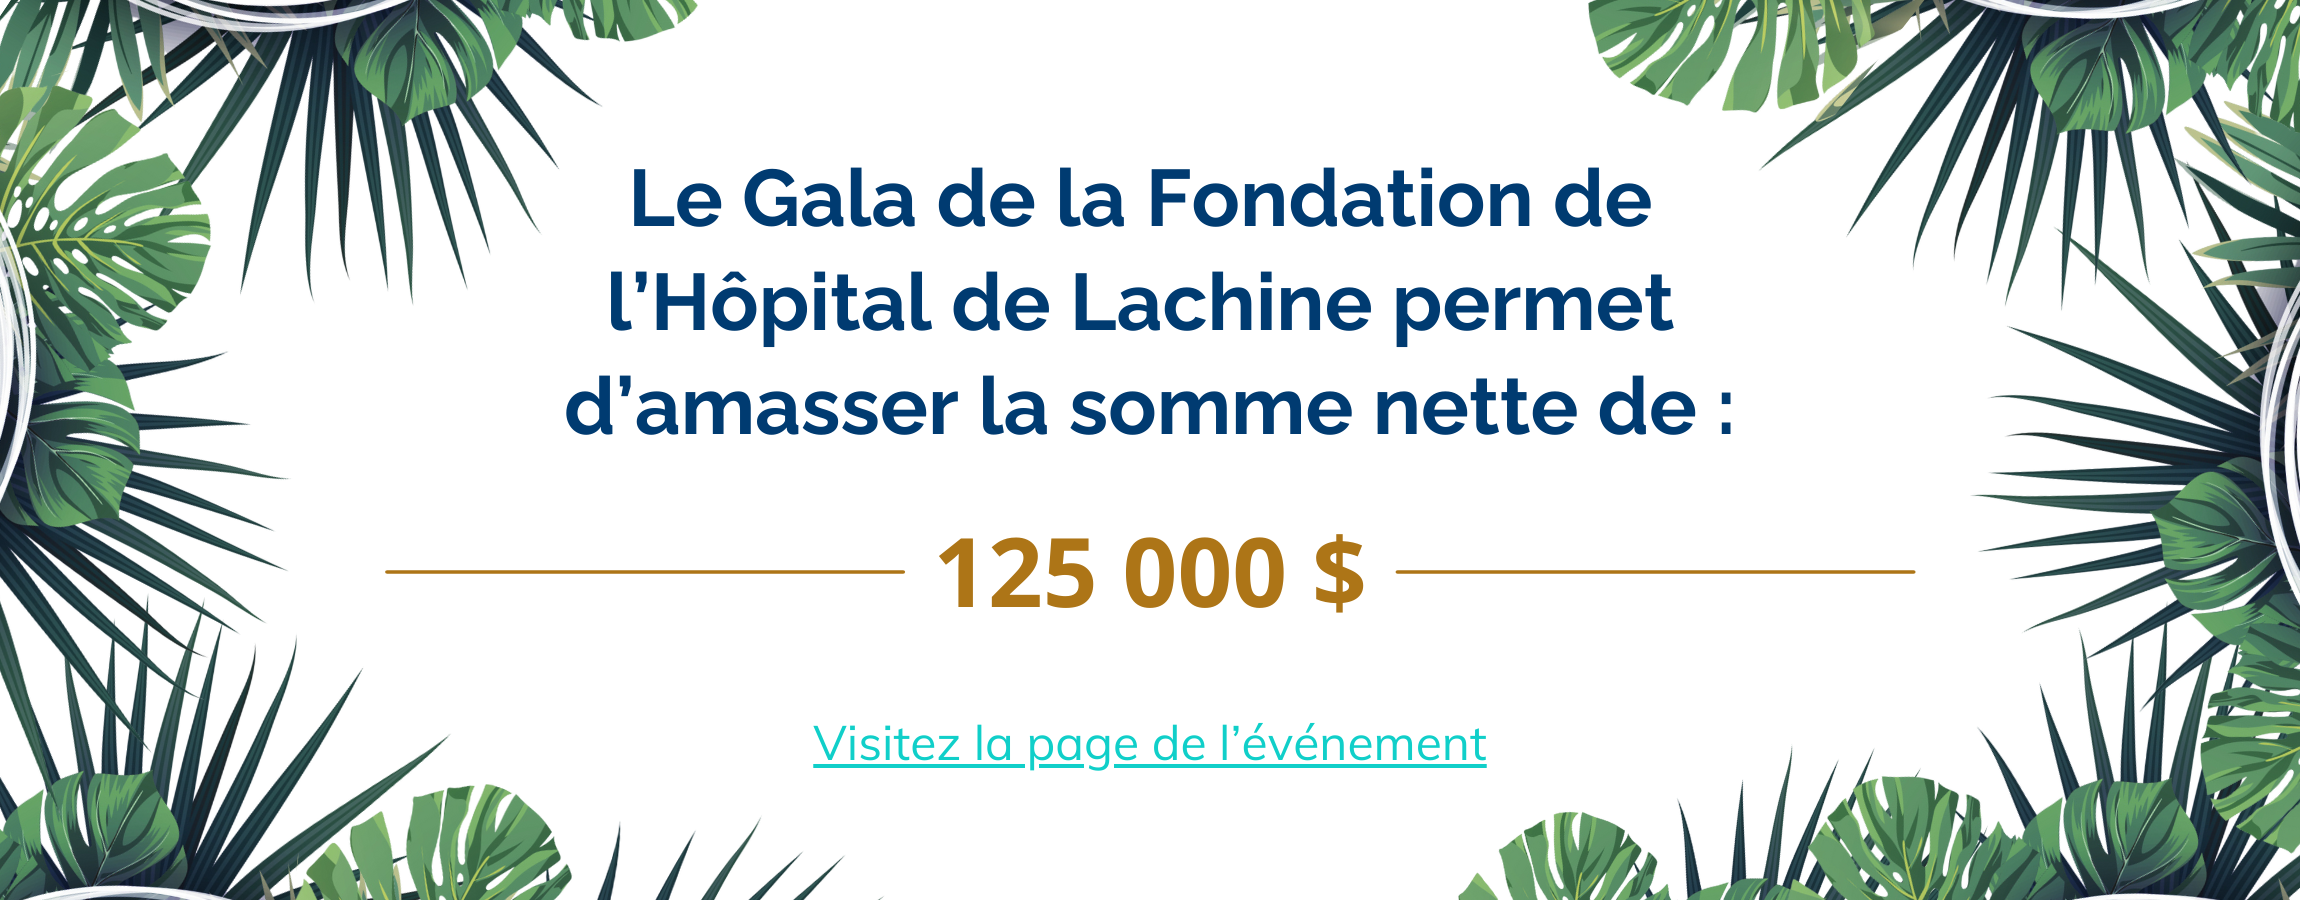 Lien: Le Gala de la Fondation de l’Hôpital de Lachine permet d’amasser la somme nette de : 125 000 $